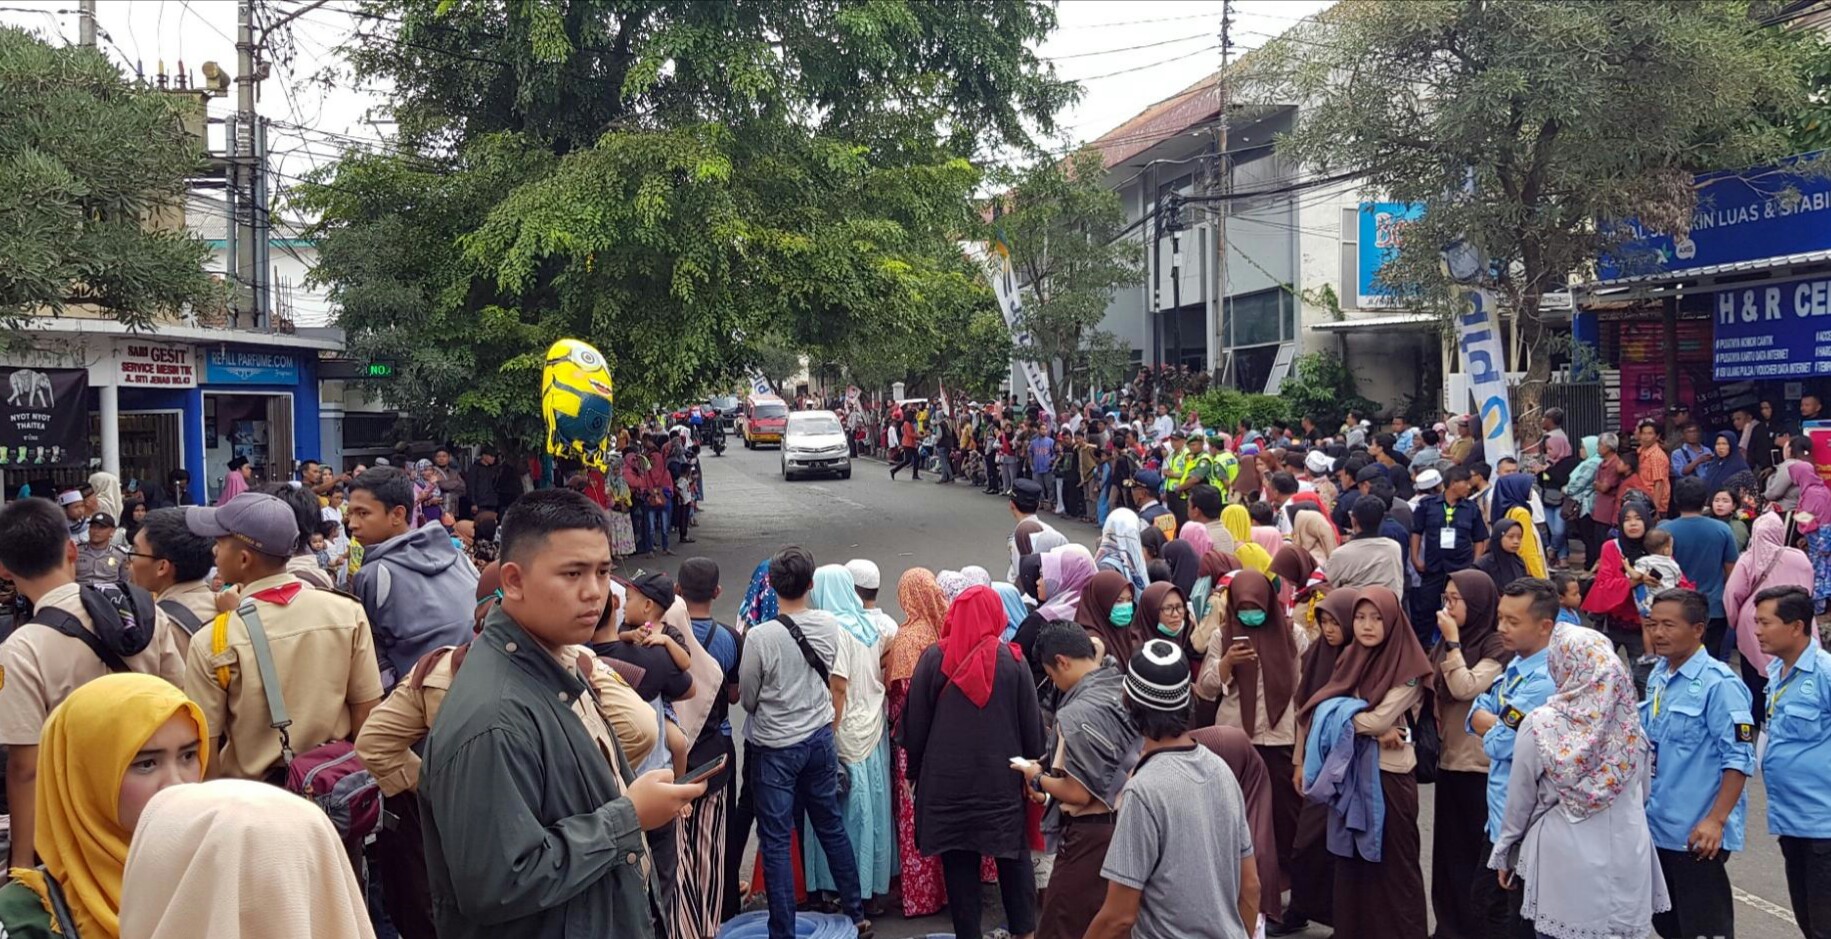 Presiden Jokowi Kunjungi Cianjur, Warga Antusias Tunggu Kedatangannya